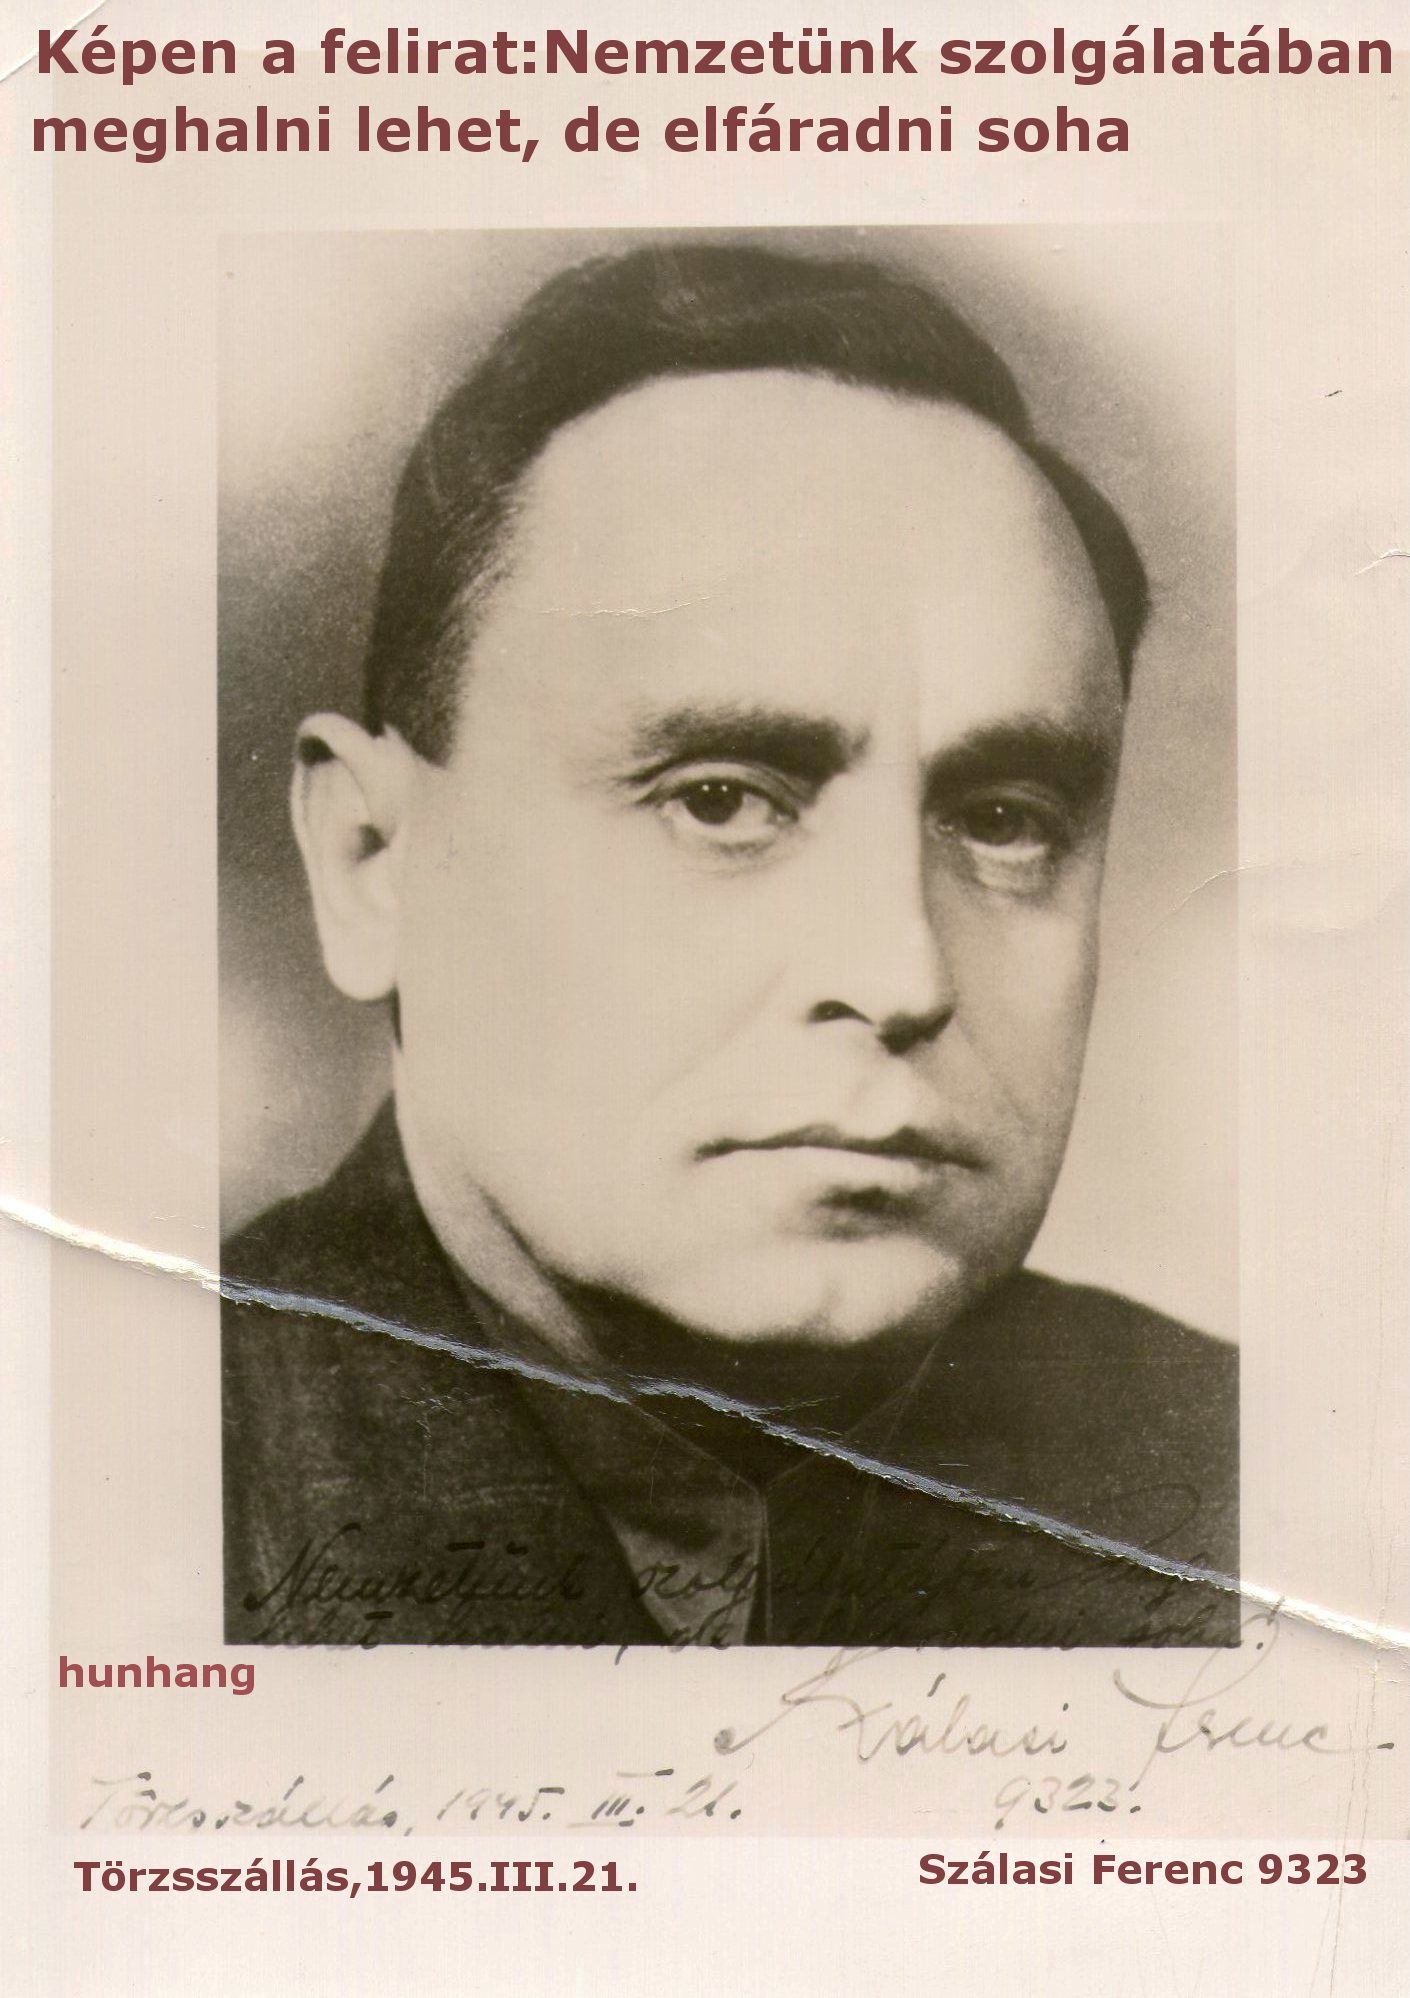 Szálasi Ferenc,Hungarizmus